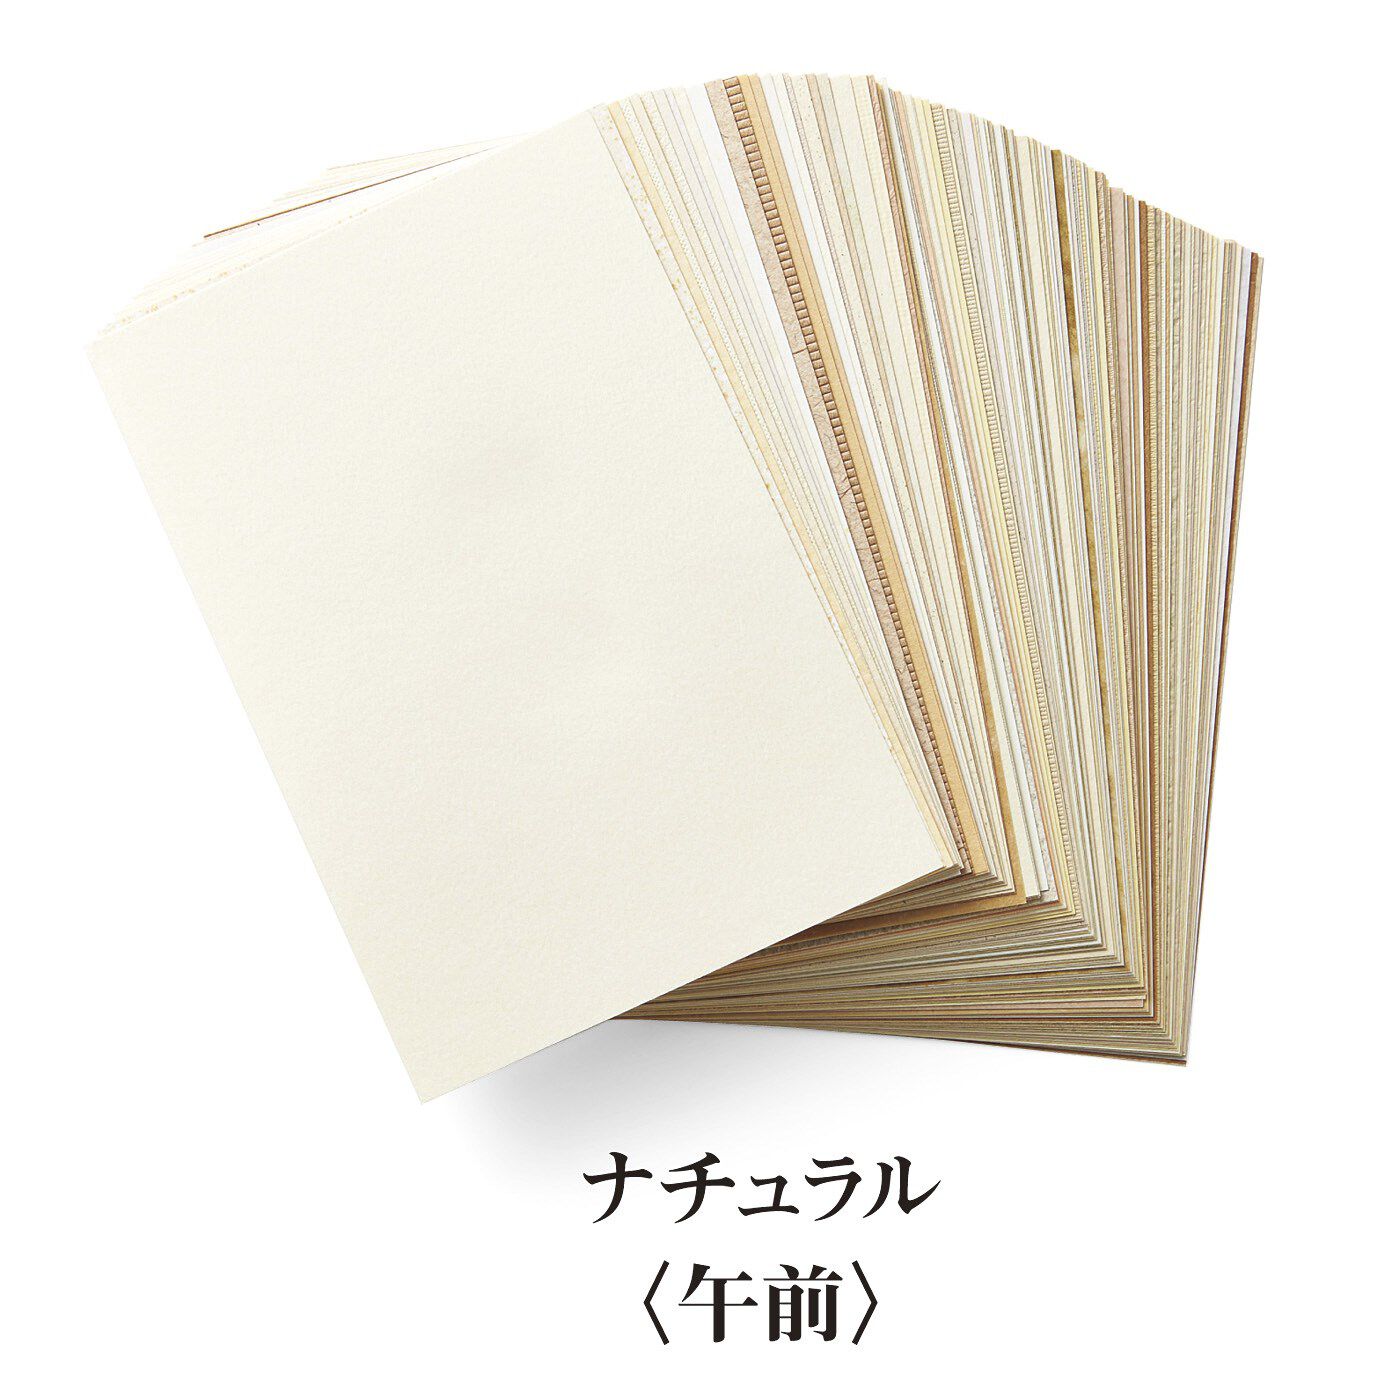 500色の色えんぴつ TOKYO SEEDS 紙の専門商社 竹尾が選ぶ 500